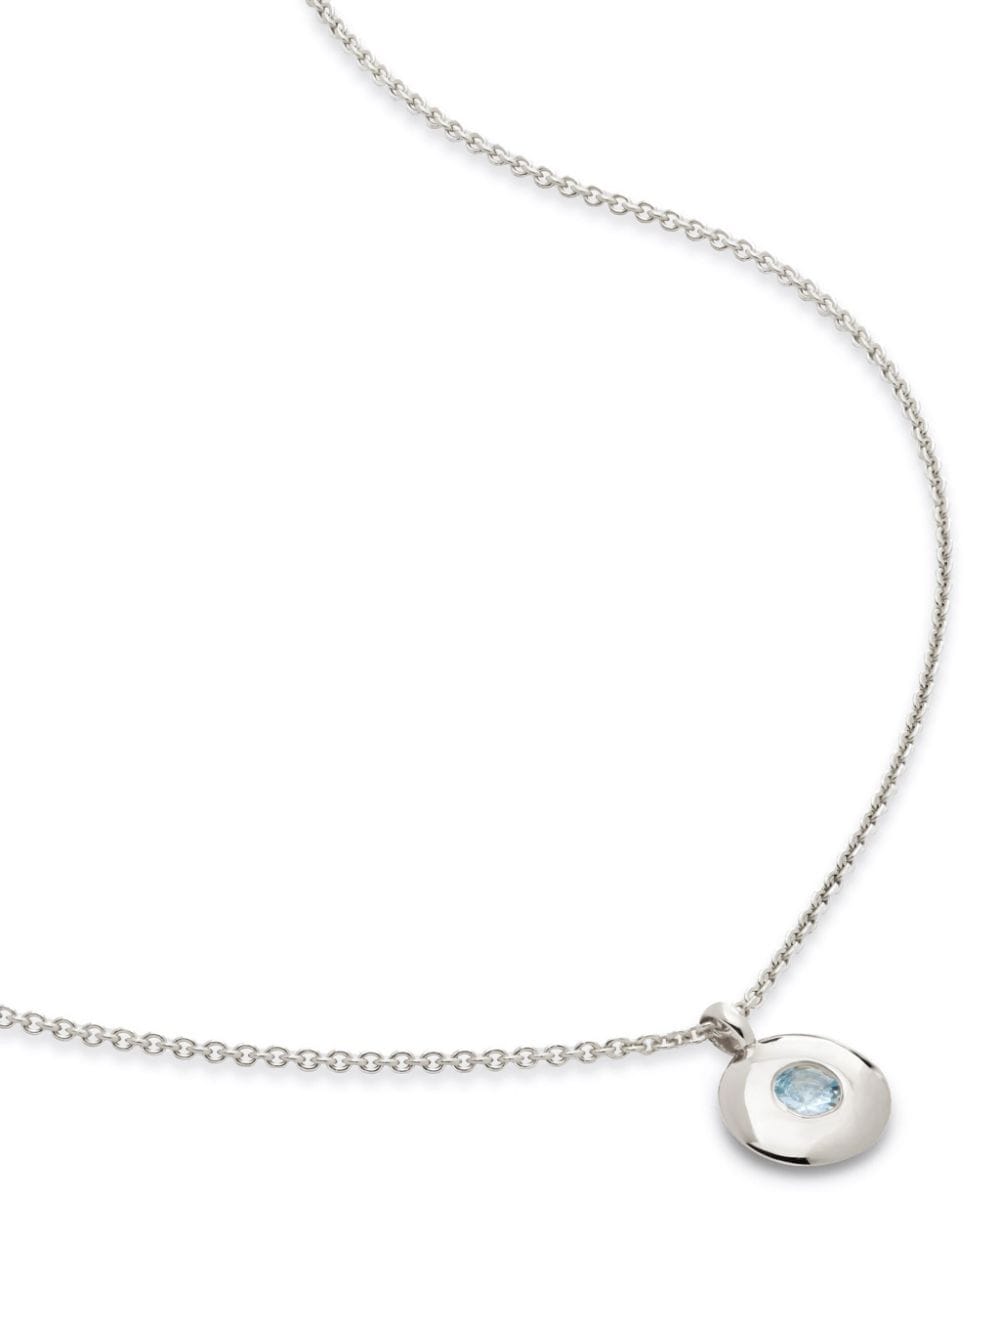 Monica Vinader March birthstone necklace - Silver von Monica Vinader